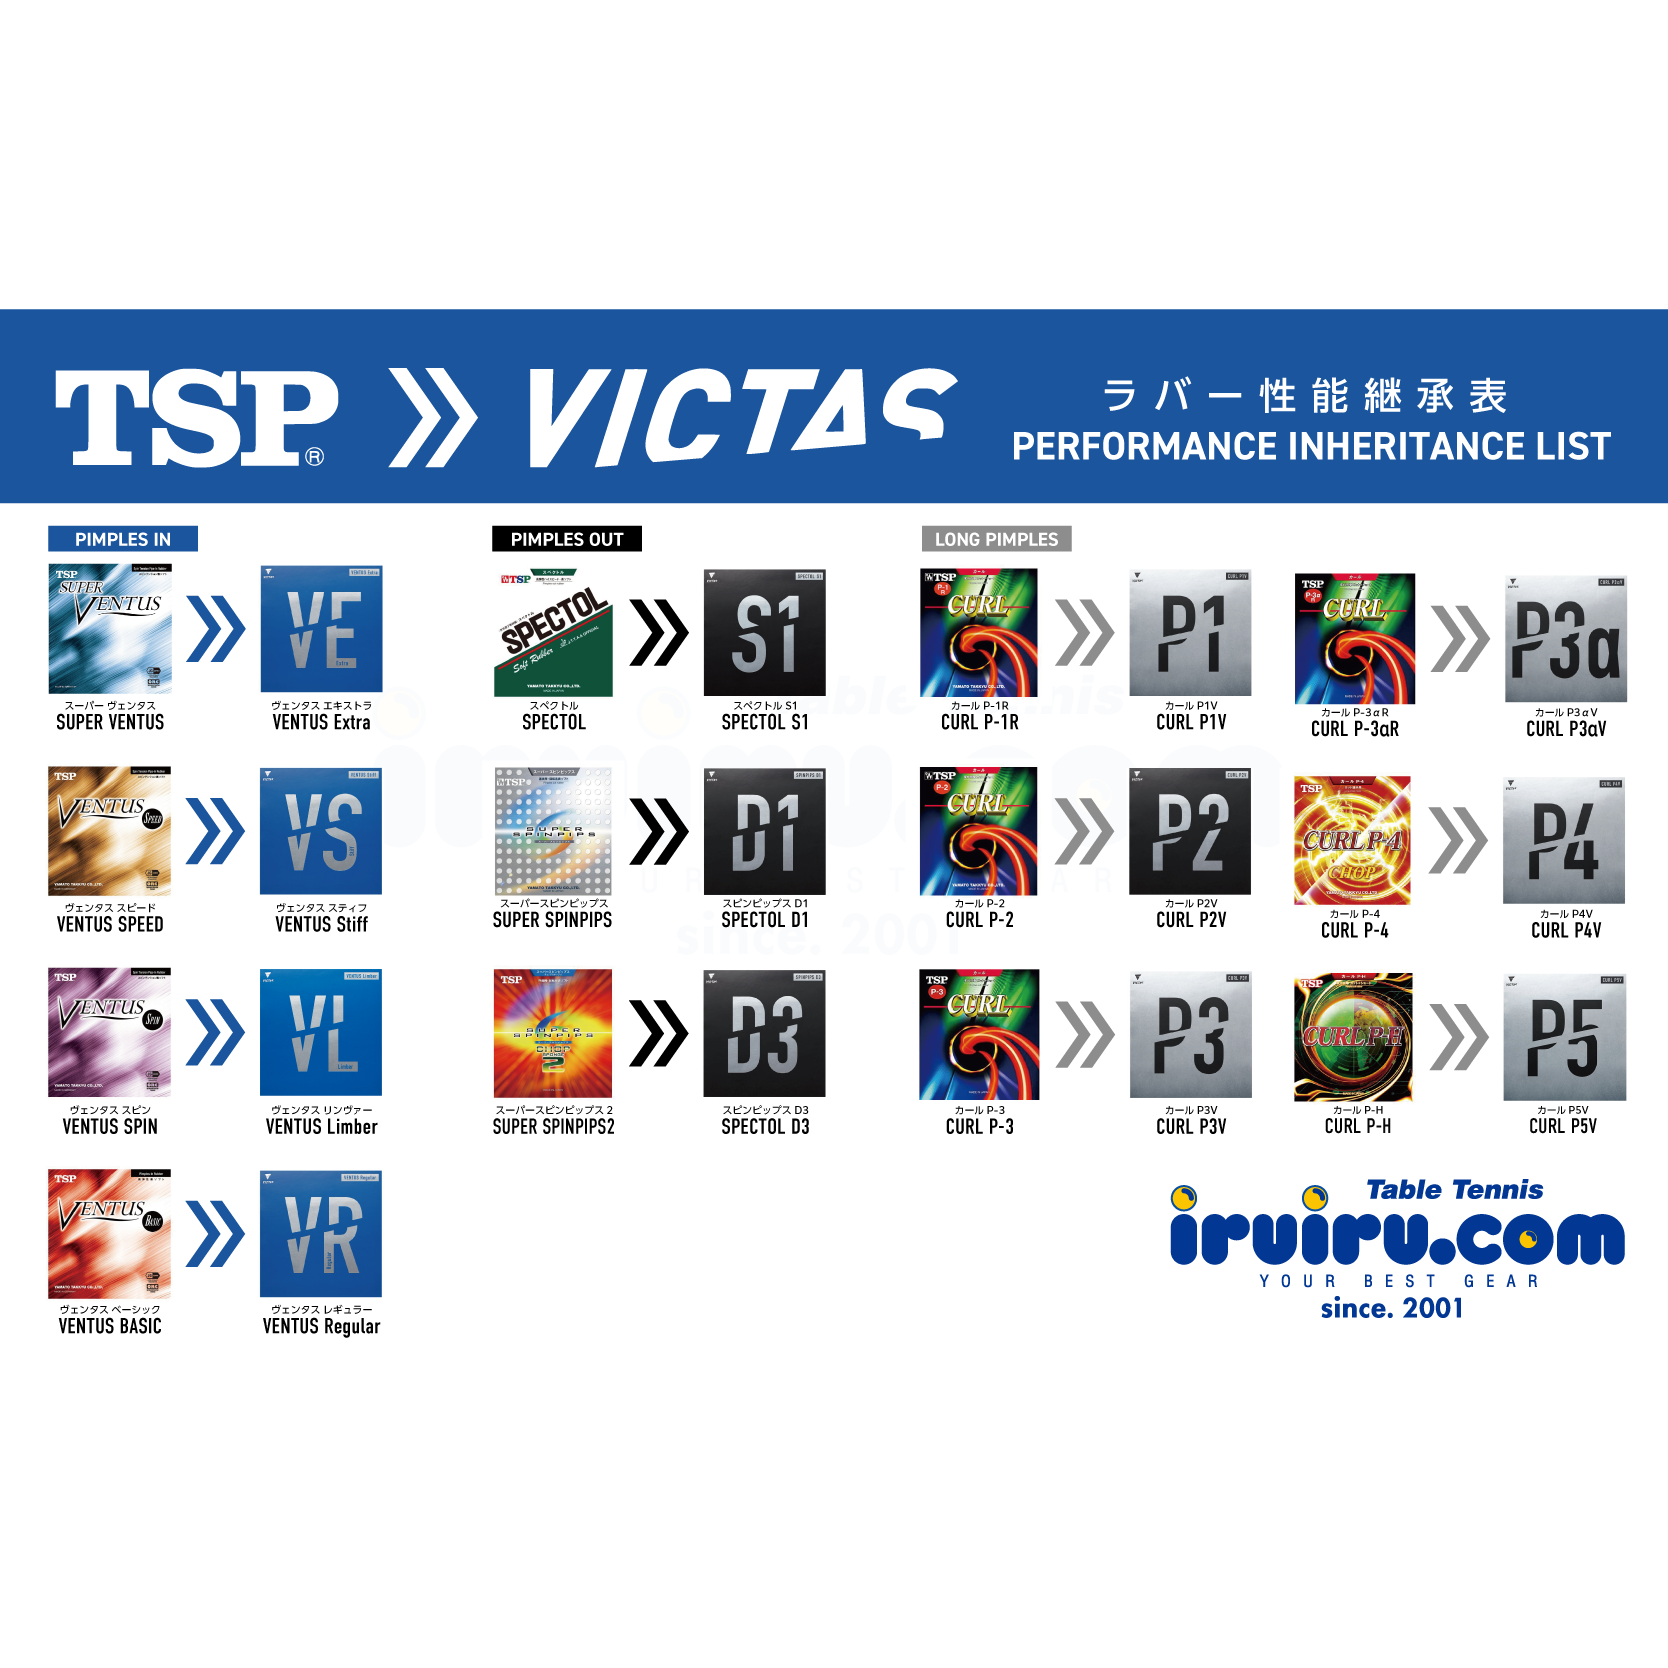 レッド系 VICTAS卓球ラバー CURL P3V 1.0 レッド 通販